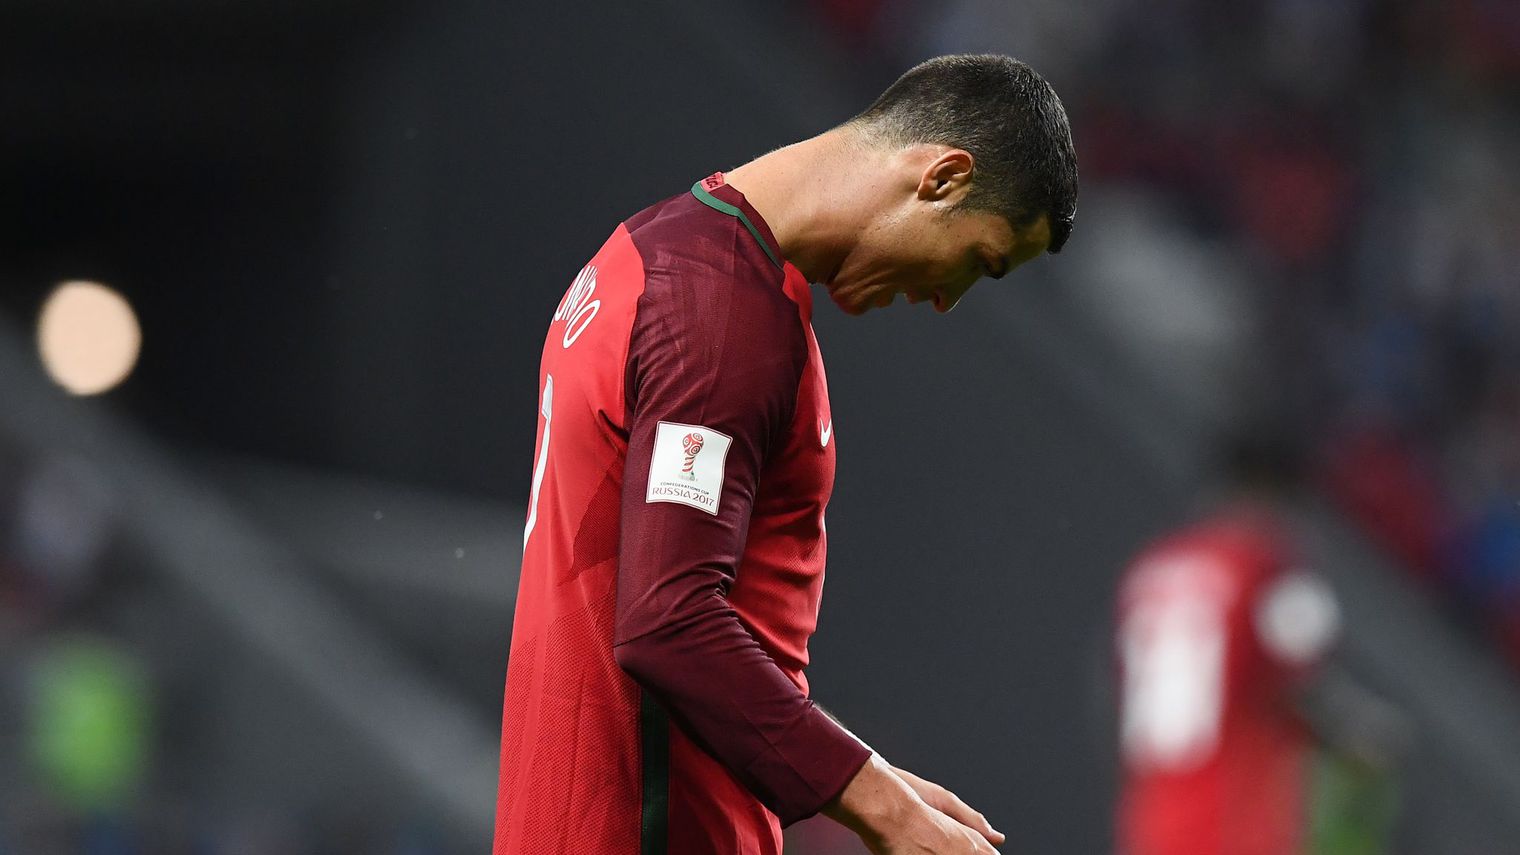 Le joueur portuguais Cristiano Ronaldo, lors de la demi-finale de Coupe des Confédérations entre le Portugal et le Chili à Kazan (Russie), le 28 juin 2017 afp.com/FRANCK FIFE